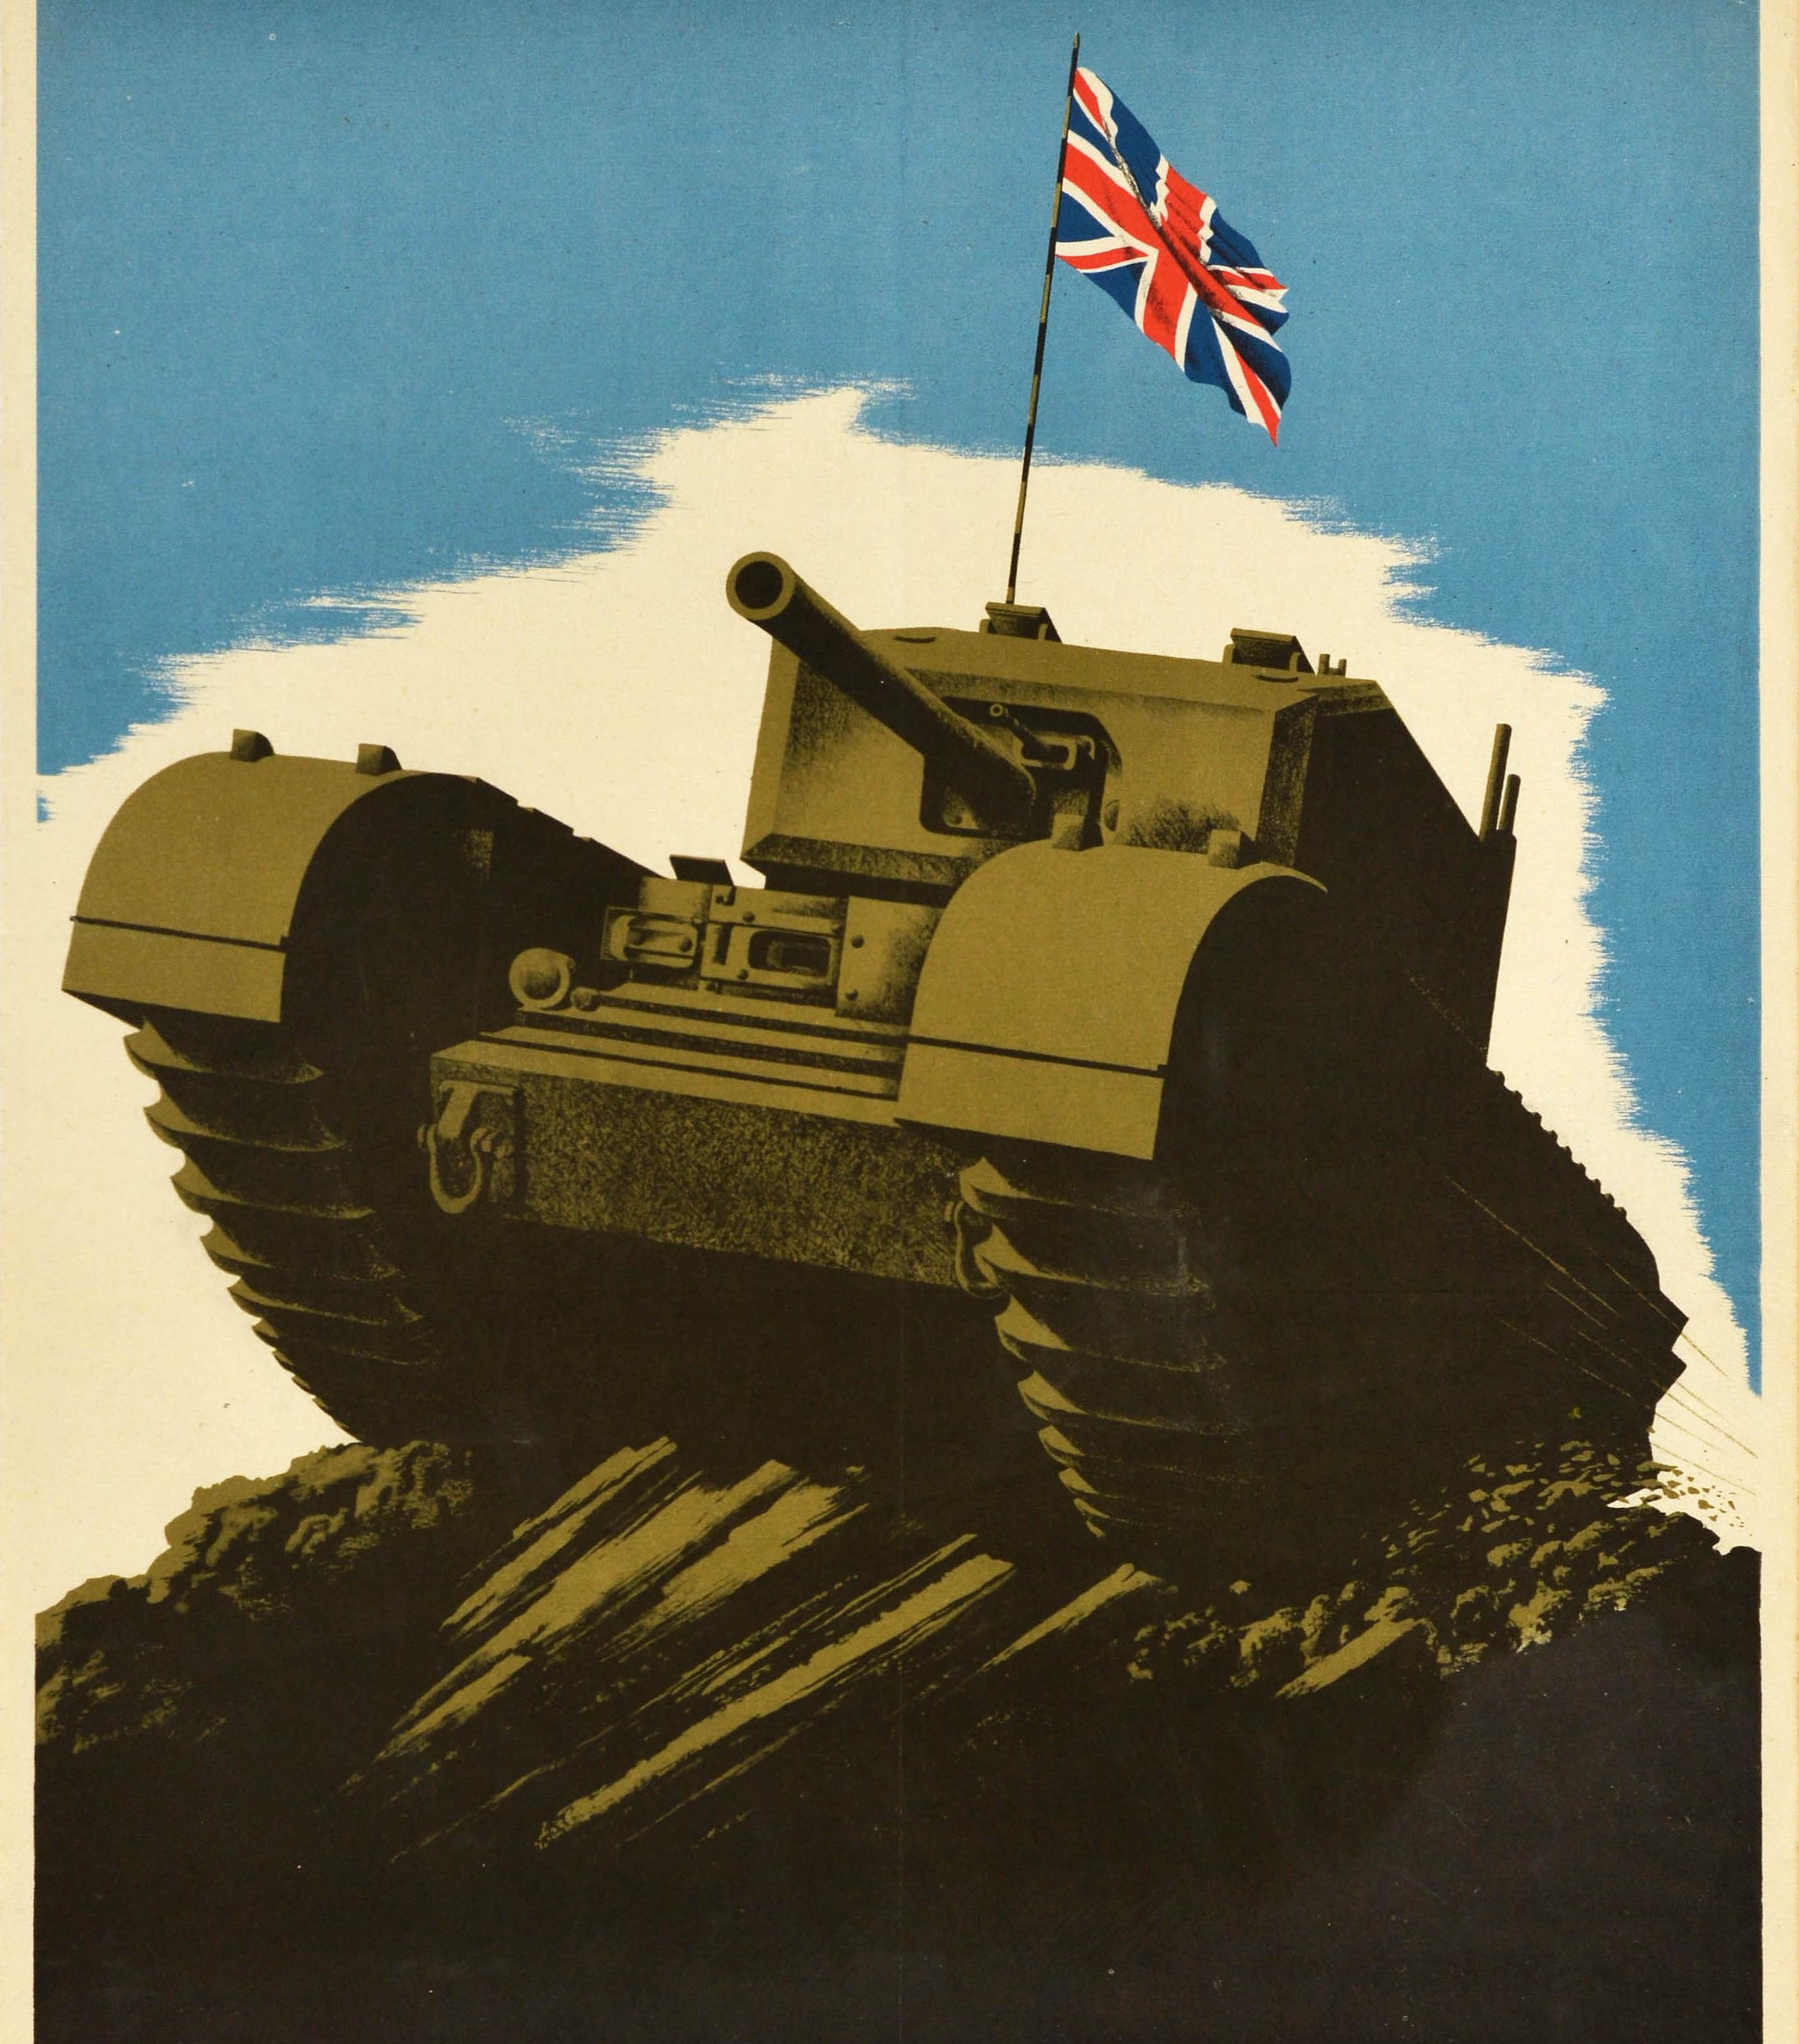 Originalplakat aus dem Zweiten Weltkrieg - Britain is Pledged to Smash Japan - mit dem Bild eines Panzers, der über einen schlammigen Hügel fährt und die Flagge des Union Jack vor dem Hintergrund des blauen Himmels schwenkt, darunter der Text in